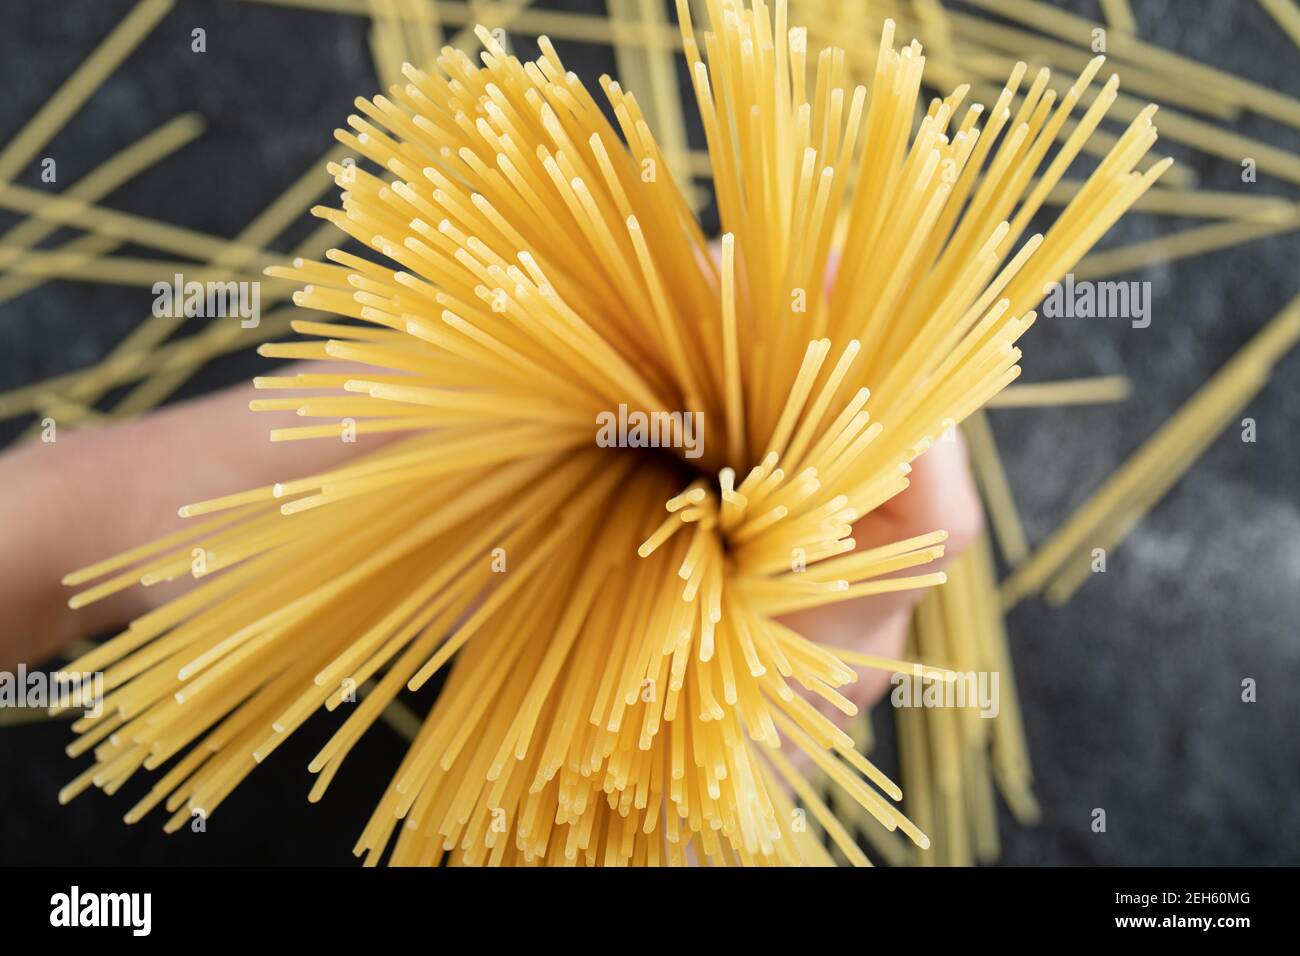 Frau Hände halten Spaghetti auf dunklem Hintergrund Stockfoto